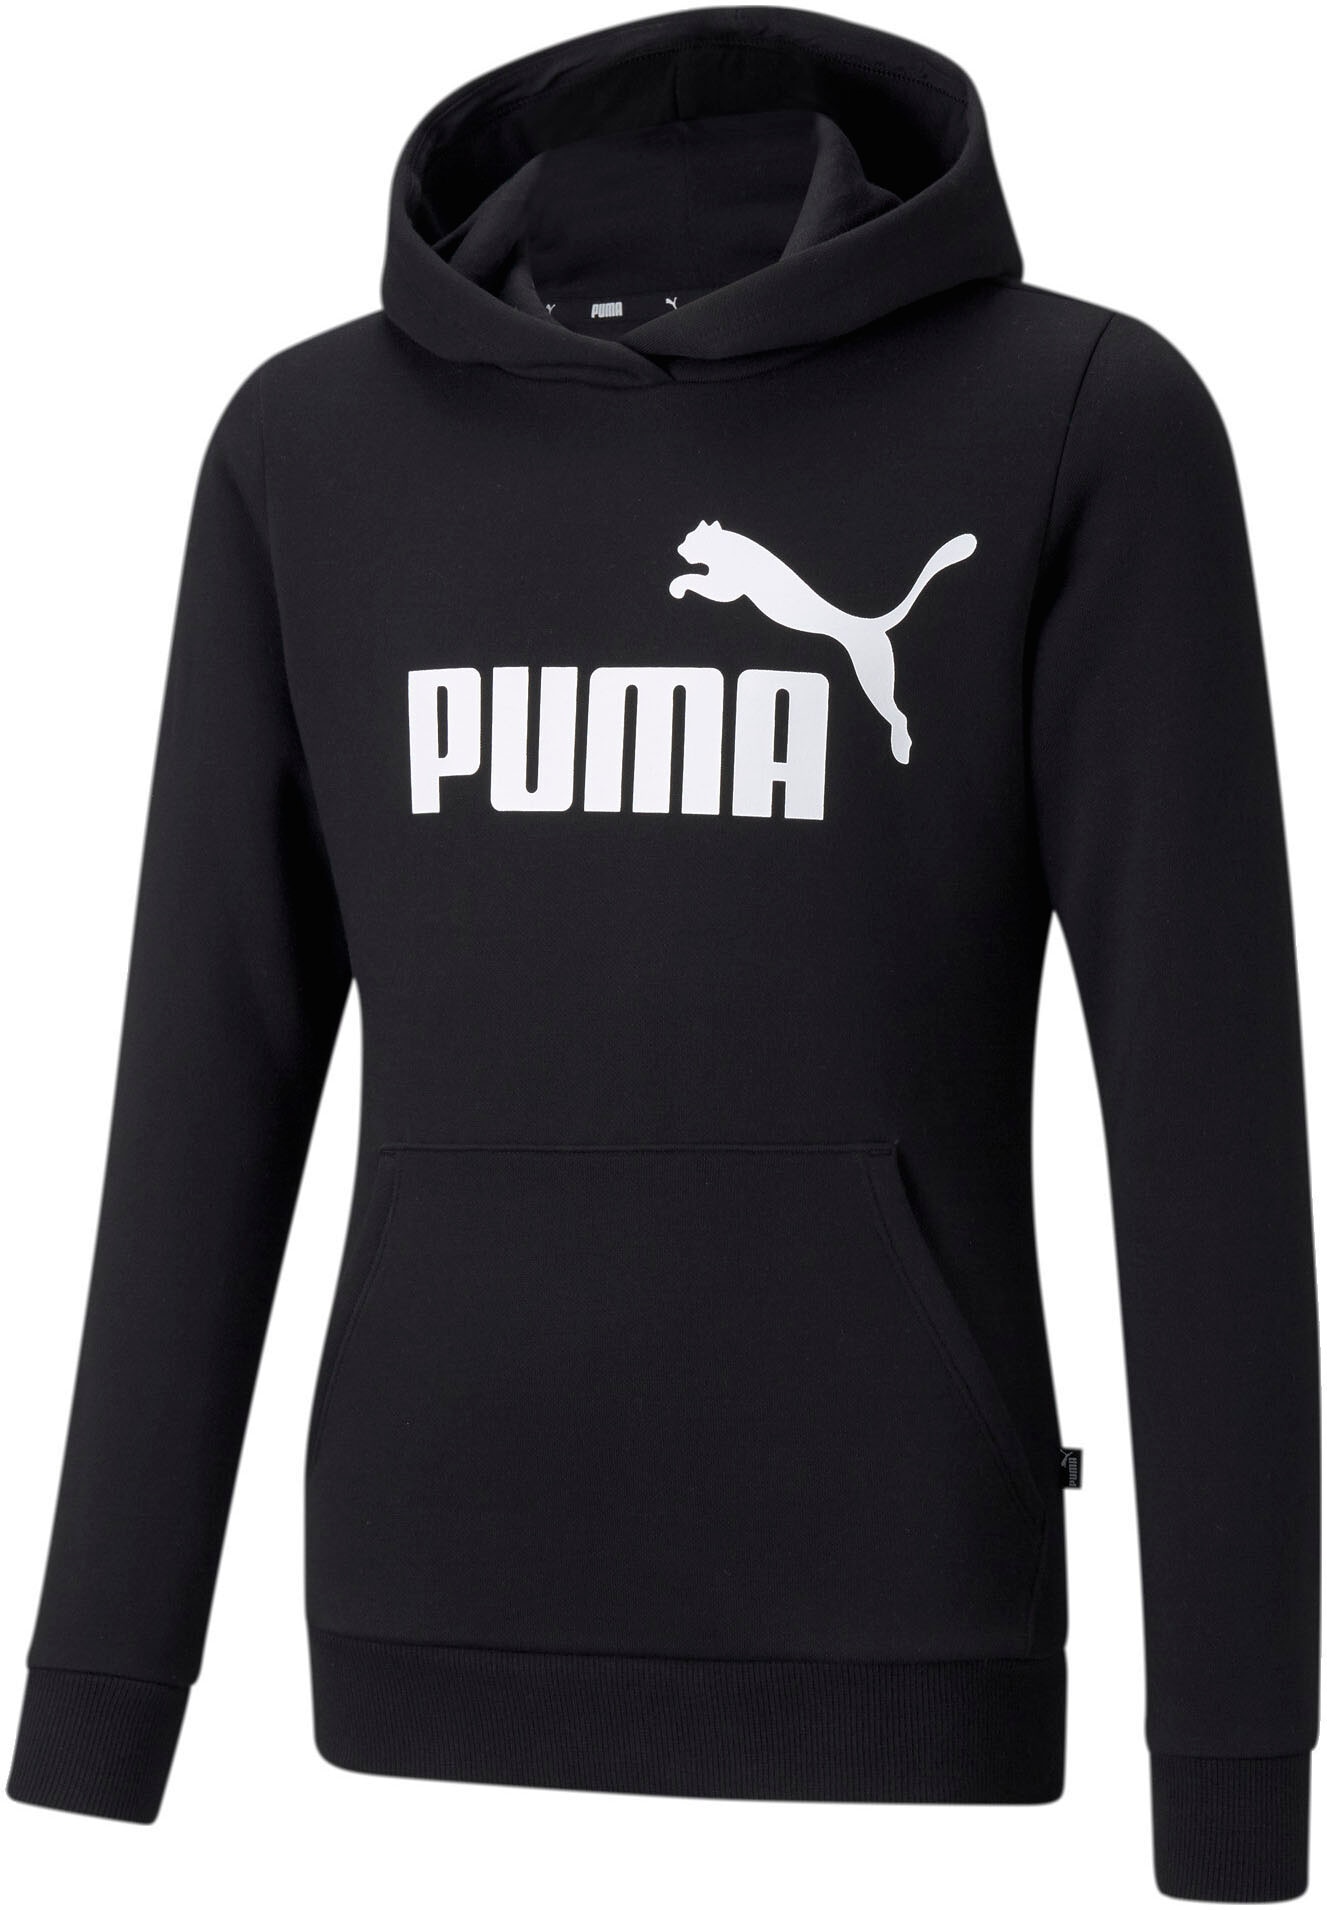 Puma Kinder-Kleidung online kaufen bei Jelmoli-Versand